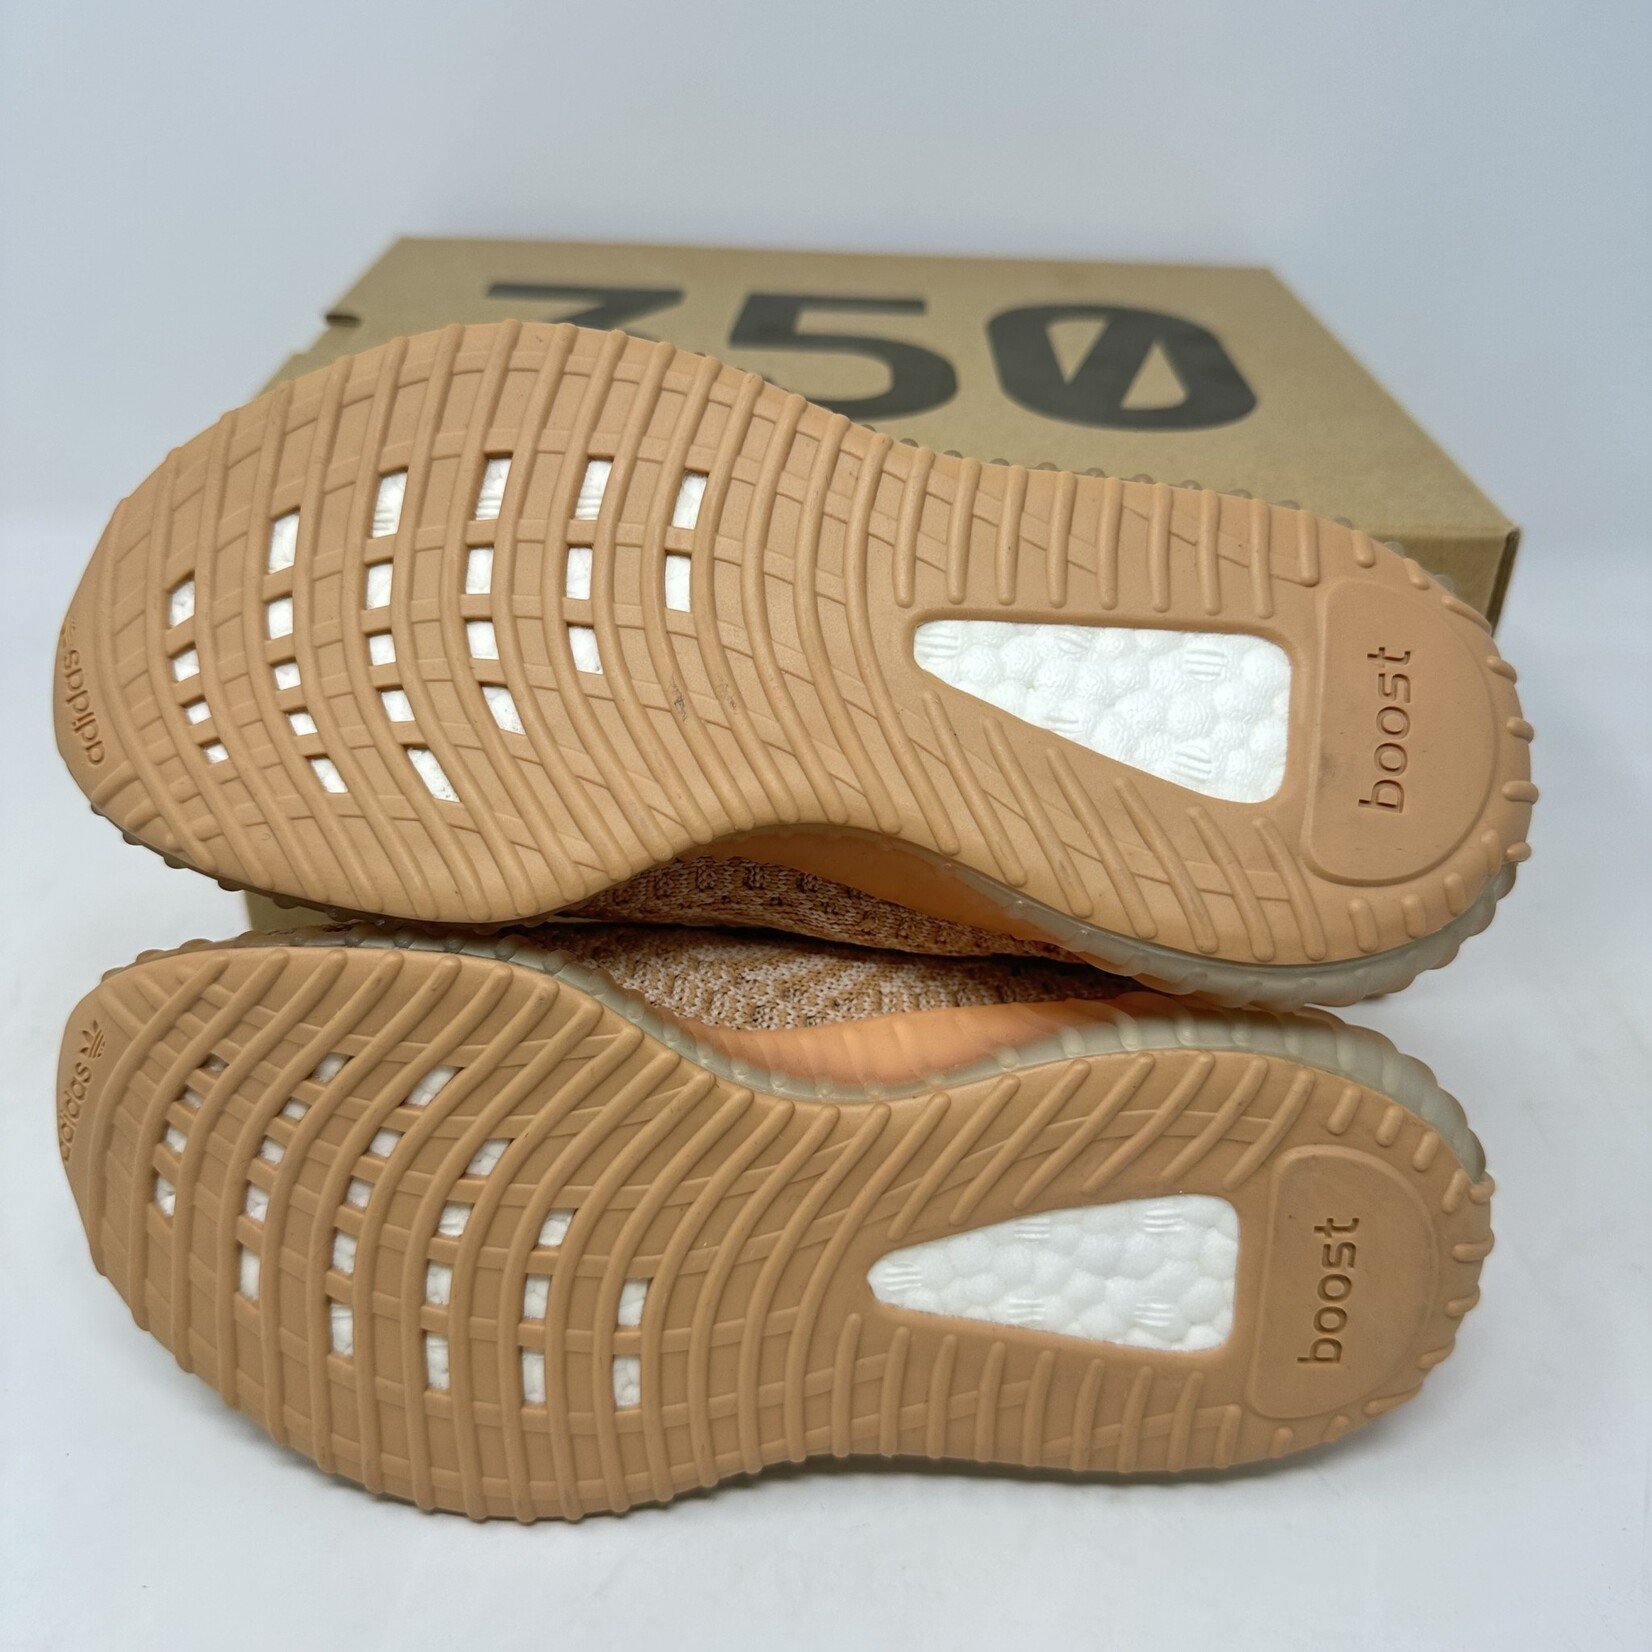 Adidas adidas Yeezy Boost 350 V2 Clay